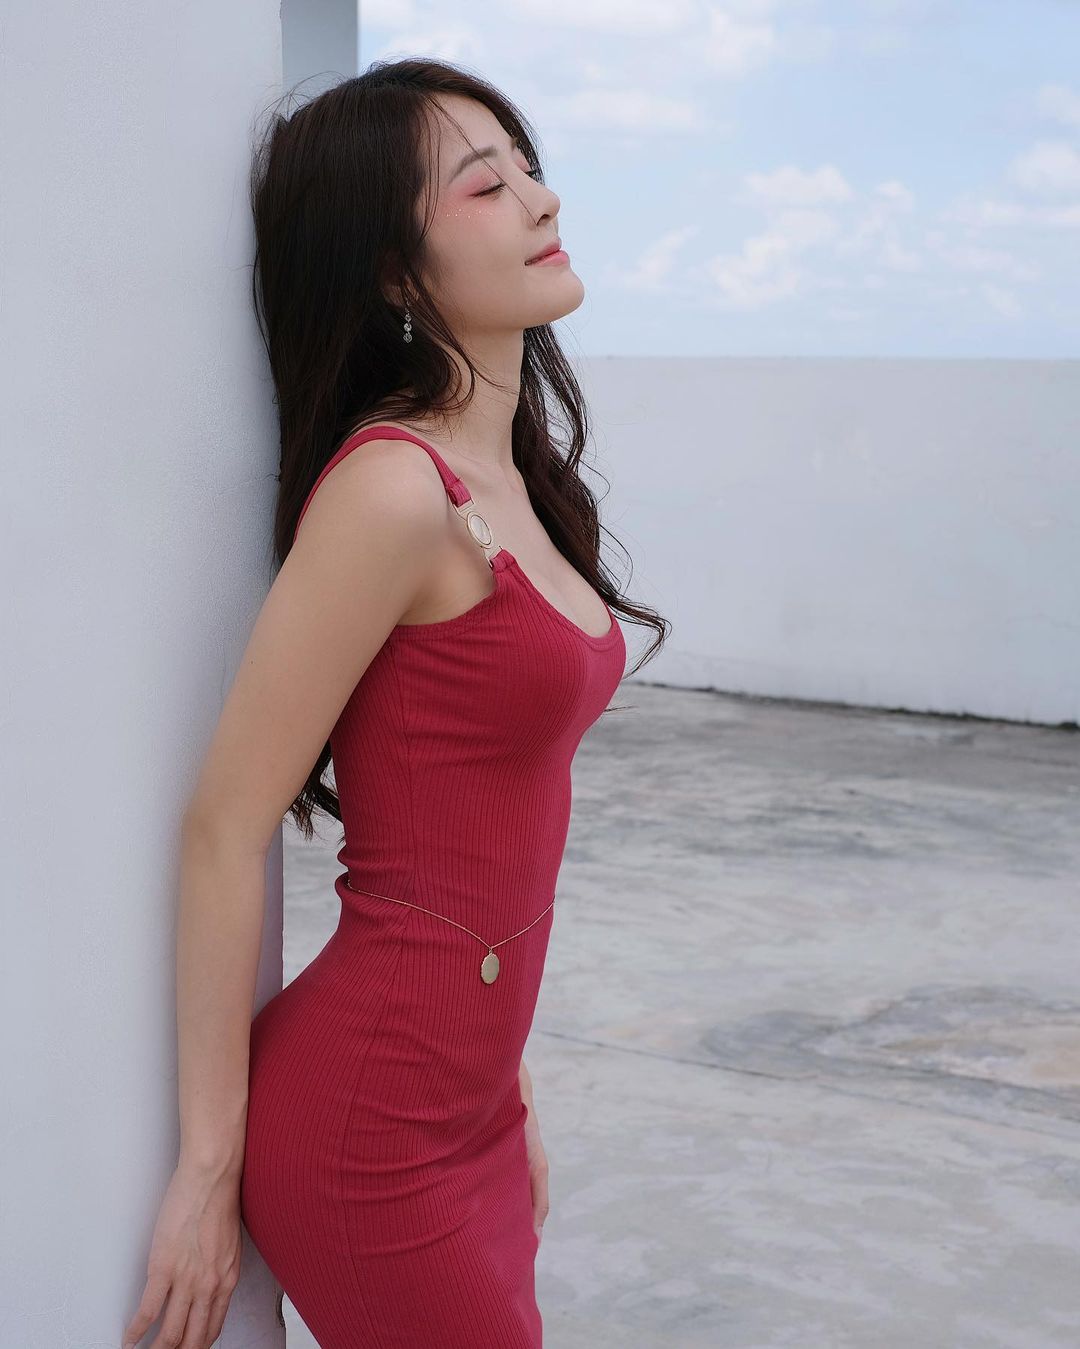 Karen Nguyễn khoe thân hình không chút mỡ thừa với bộ đầm đỏ bó sát quyến rũ. Người đẹp sở hữu hình thể đáng mơ ước với vòng eo 56 cm, vóc dáng săn chắc, thon gọn.